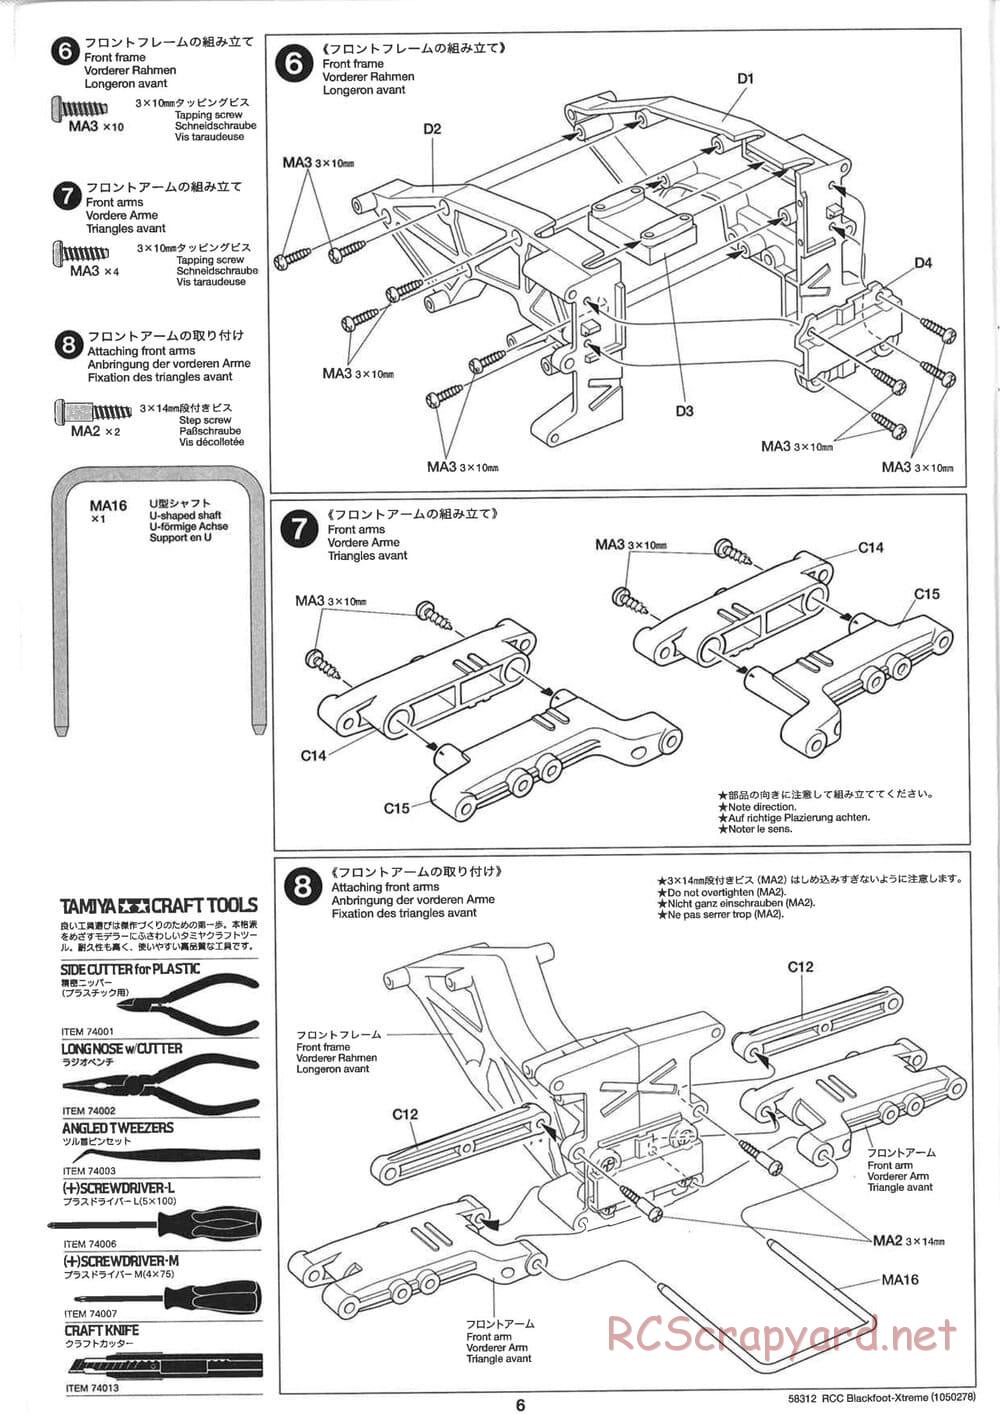 Tamiya - Blackfoot Xtreme - WT-01 Chassis - Manual - Page 6